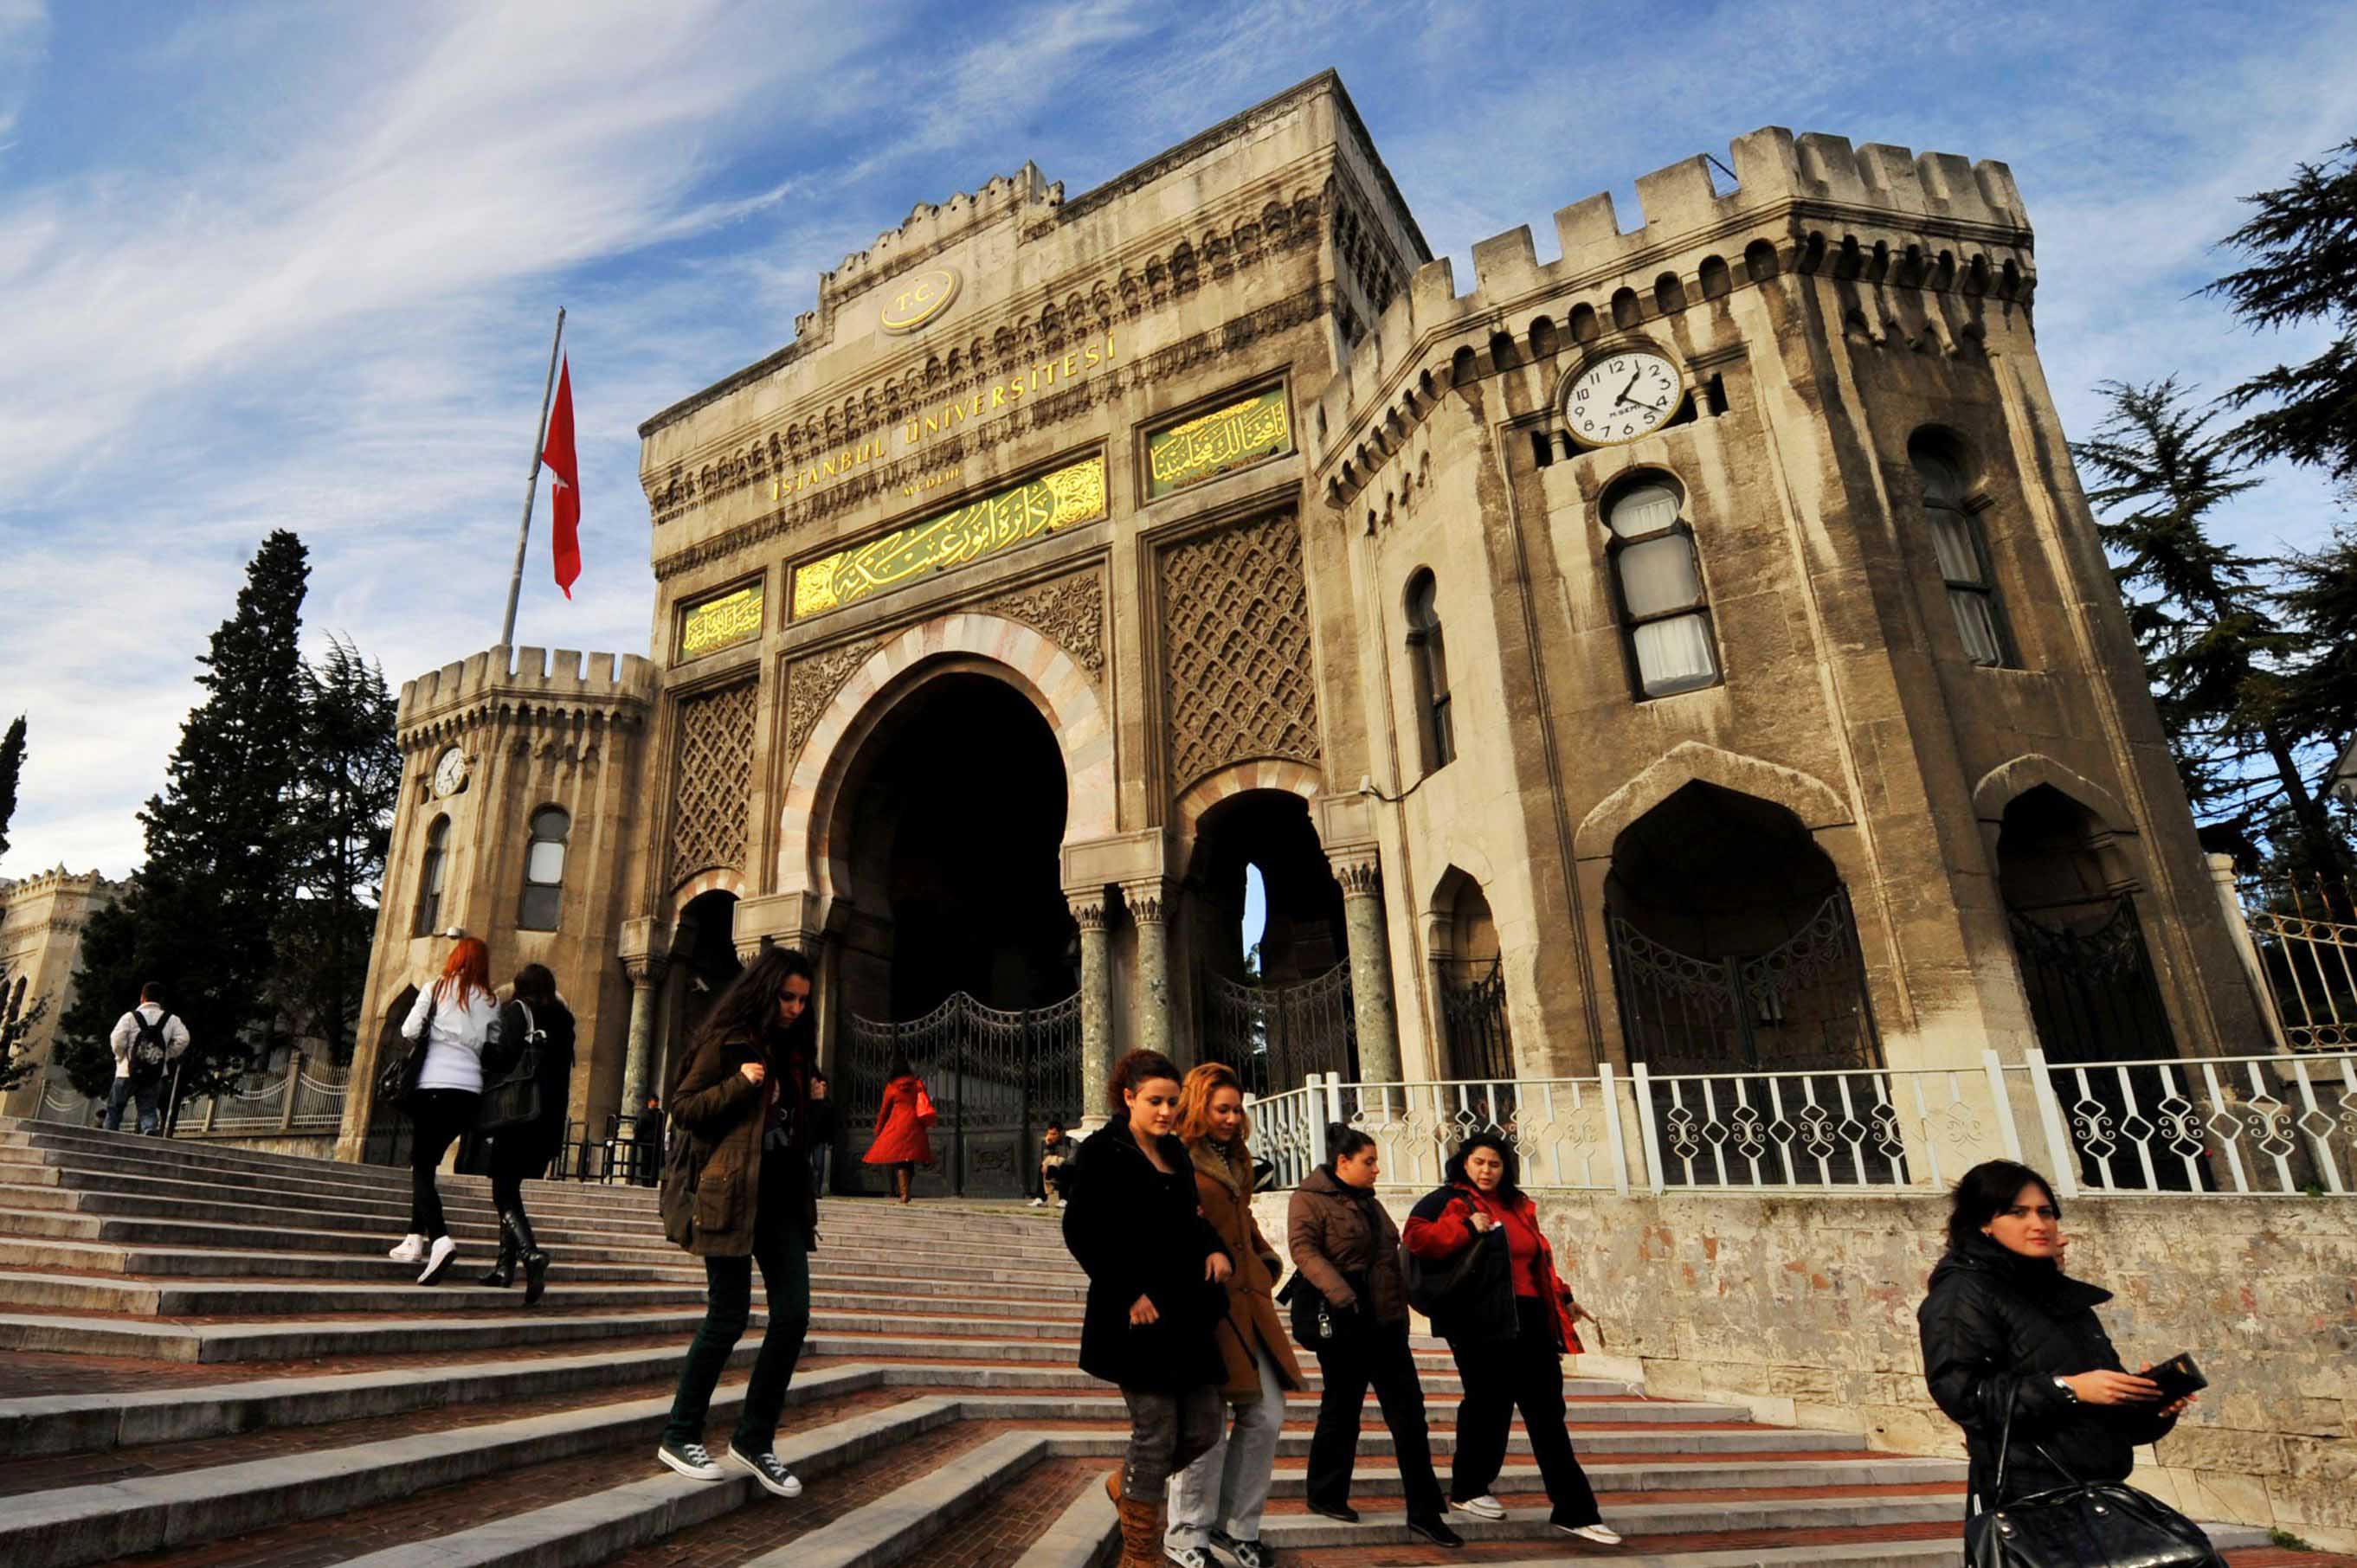  İstanbul Üniversitesi 563 yılı devirdi!